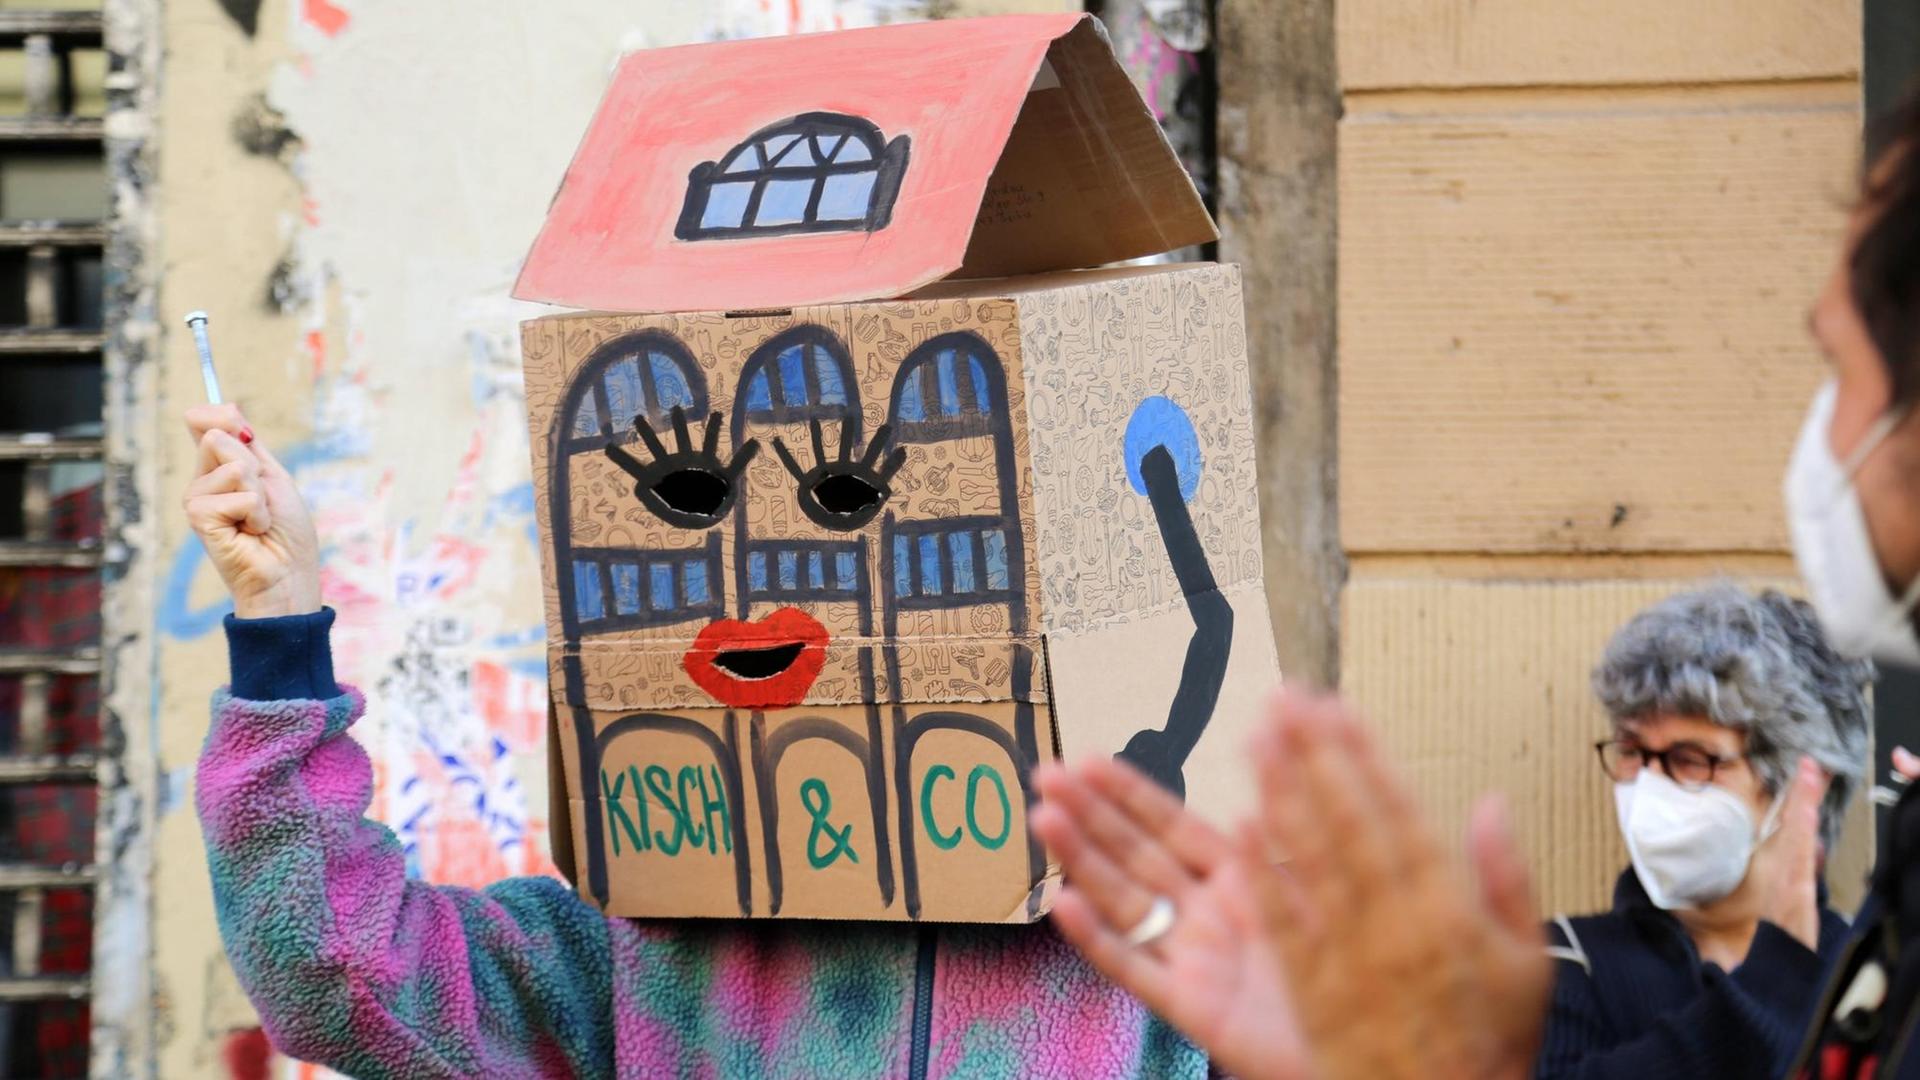 Ein Demonstrant hat sich einen zum Haus umgestalteten Pappkarton auf die Schultern und über seinen Kopf gesetzt. Der Pappkarton stellt das Haus dar, in dem sich die Räume von Kisch & Co. bislang befanden